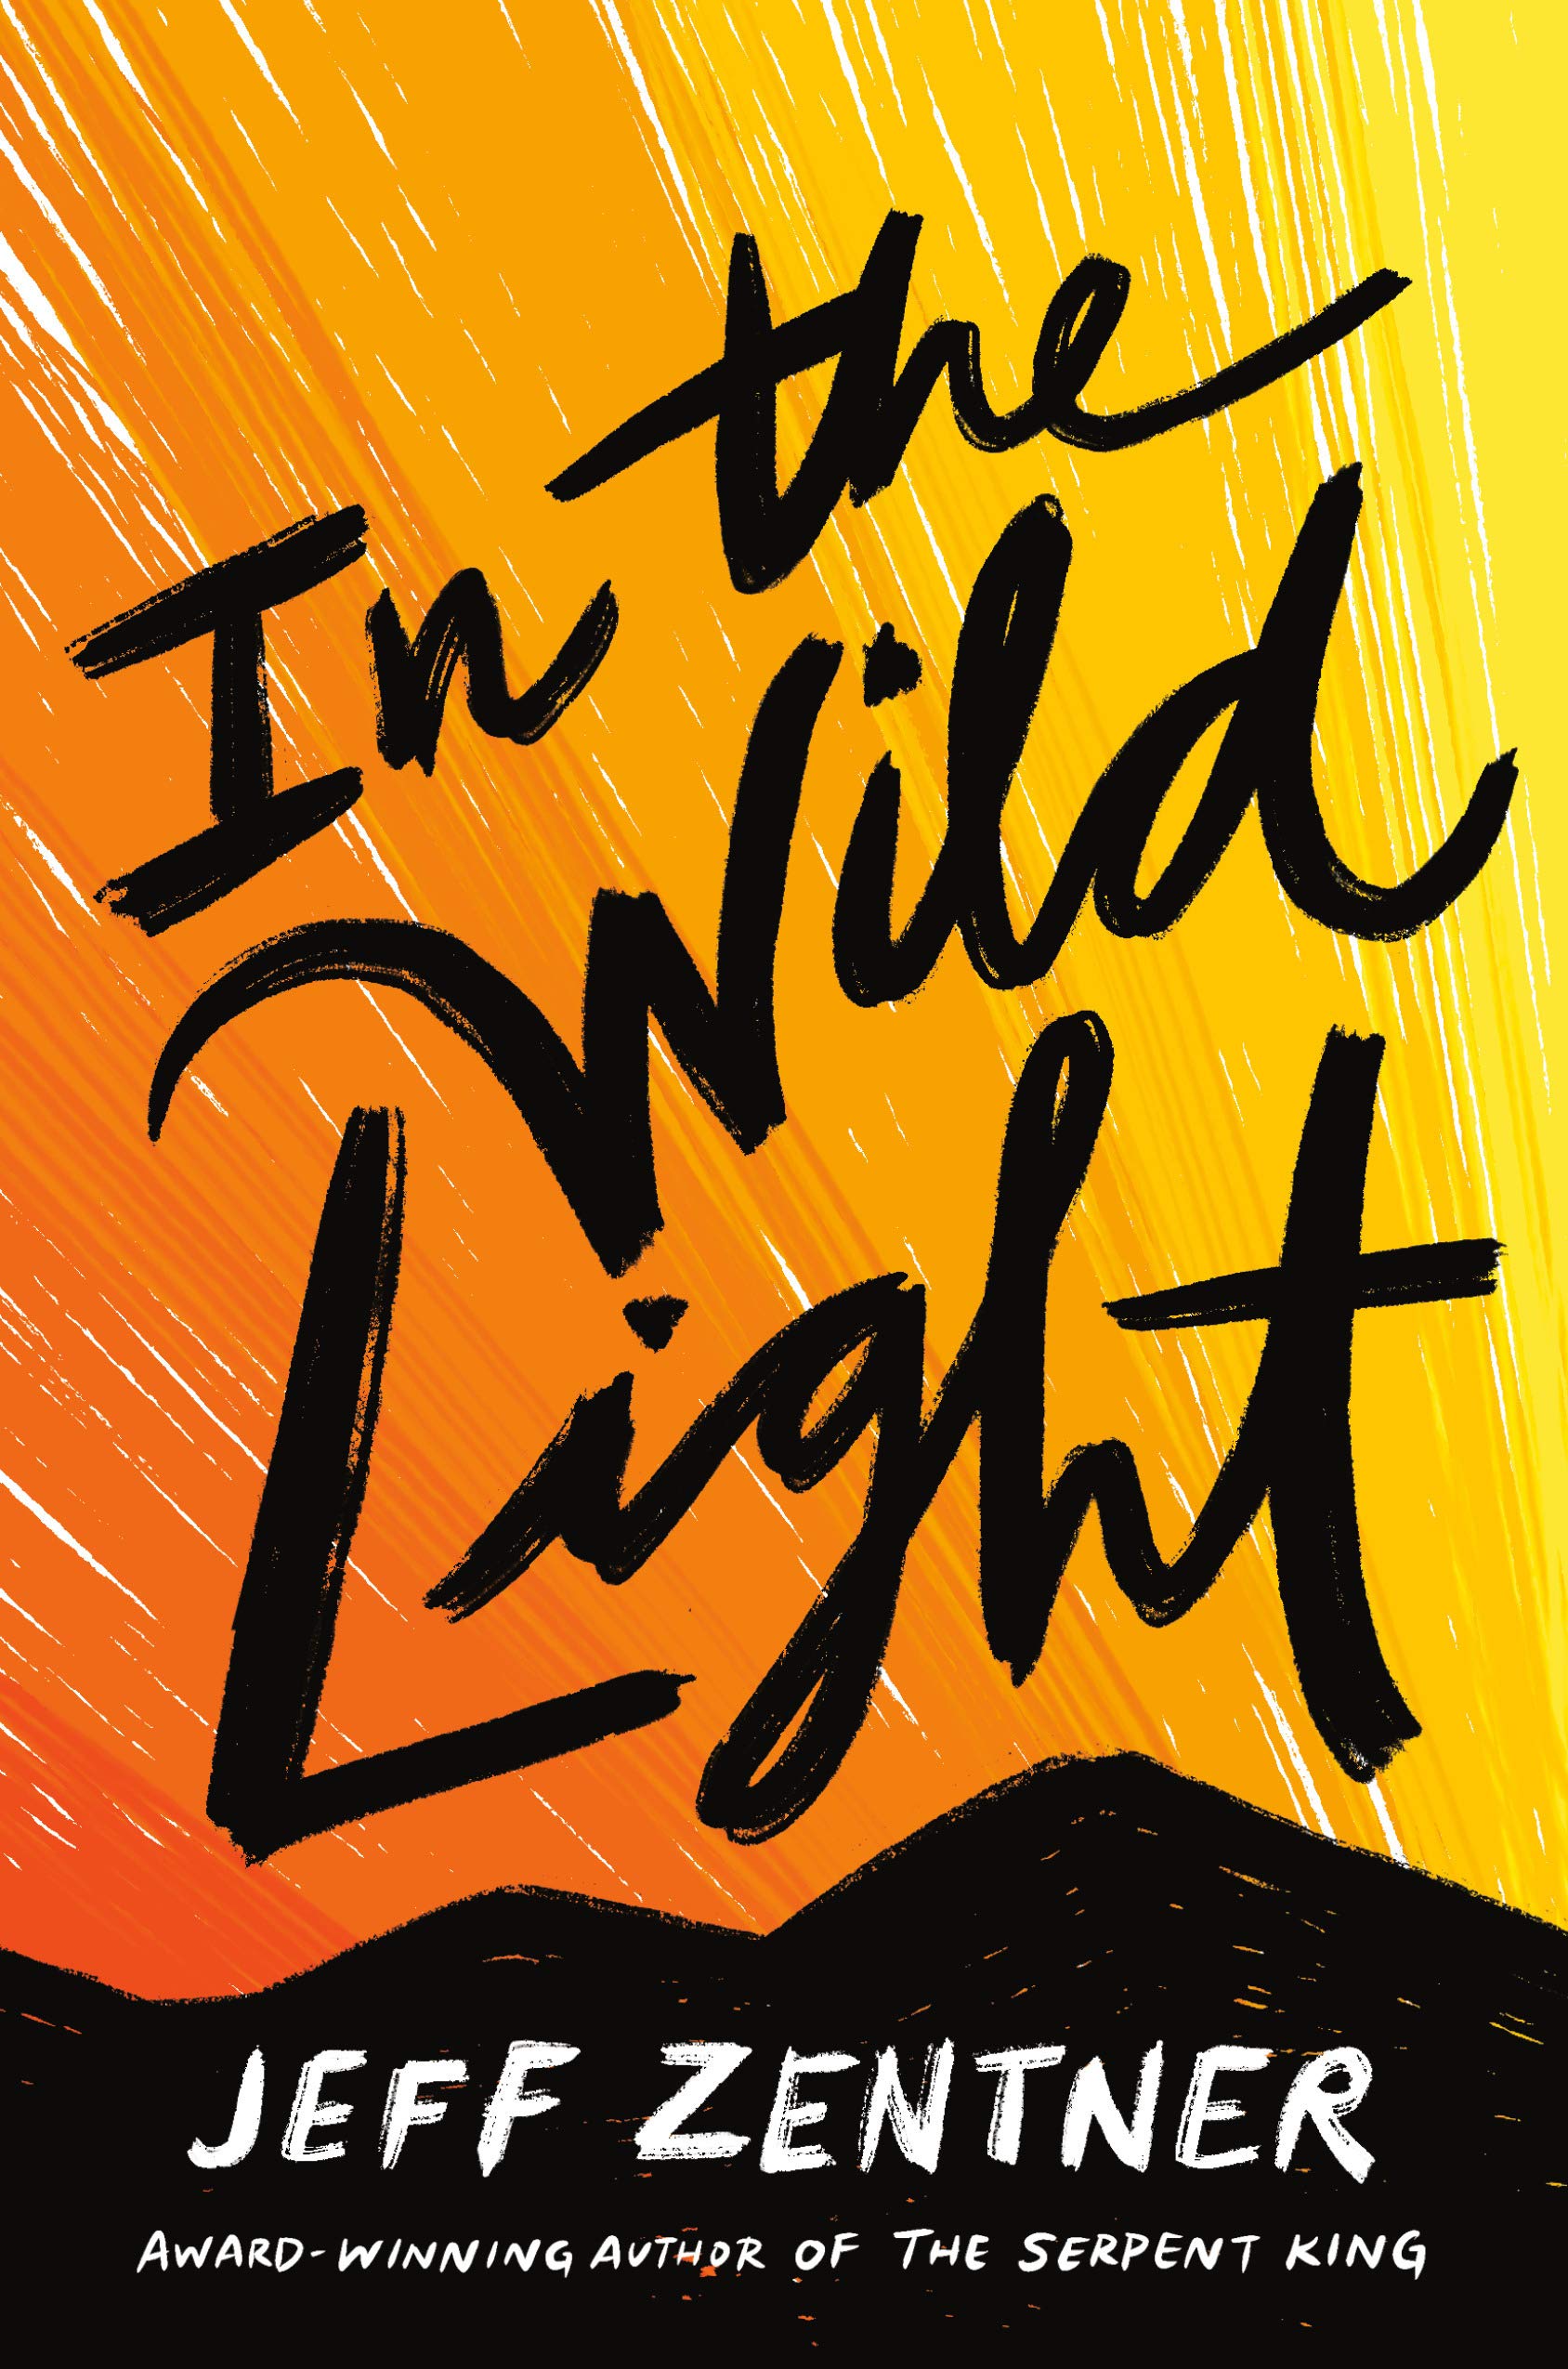 In the Wild Light Hardcover by Jeff Zentner